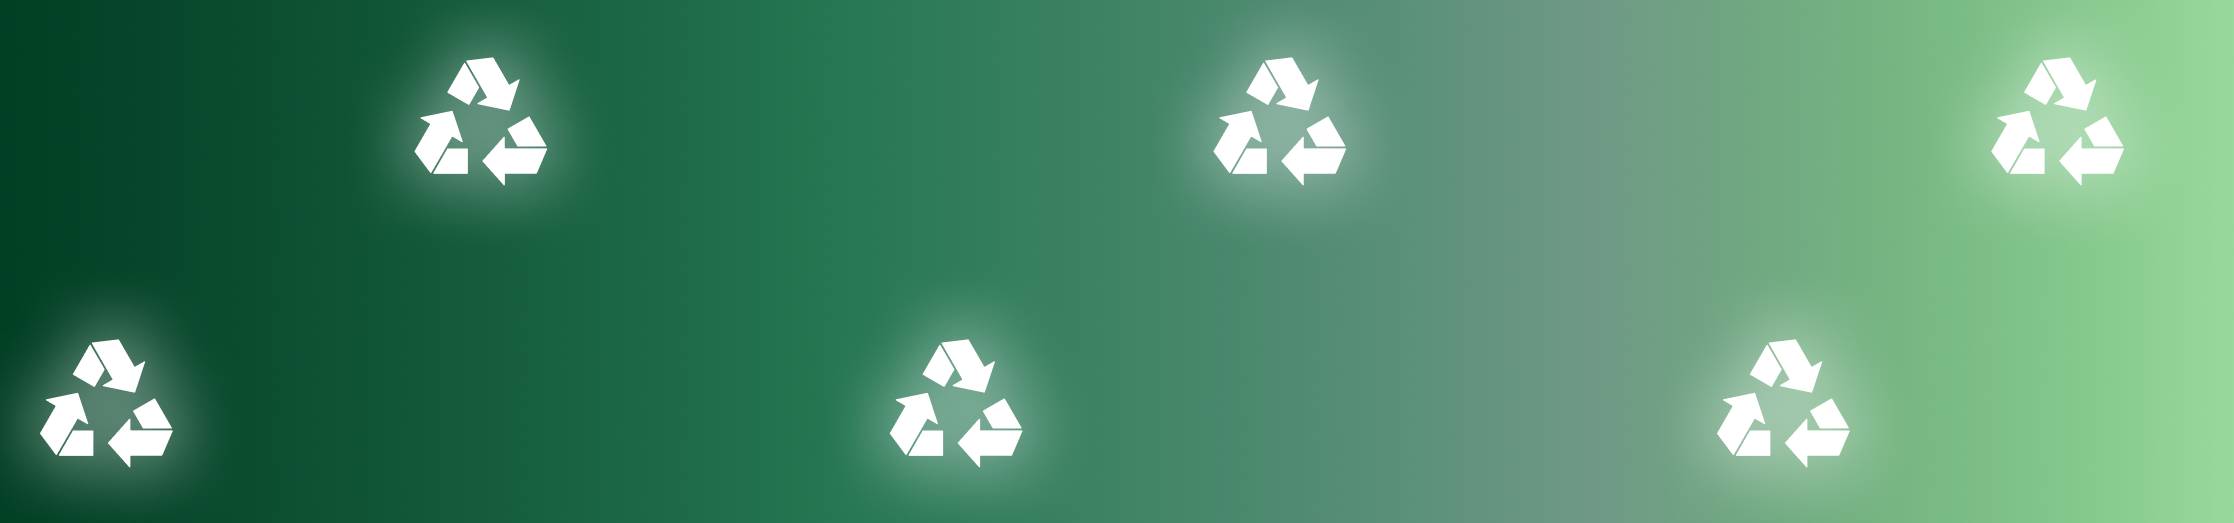 Incorporando la idea del reciclaje